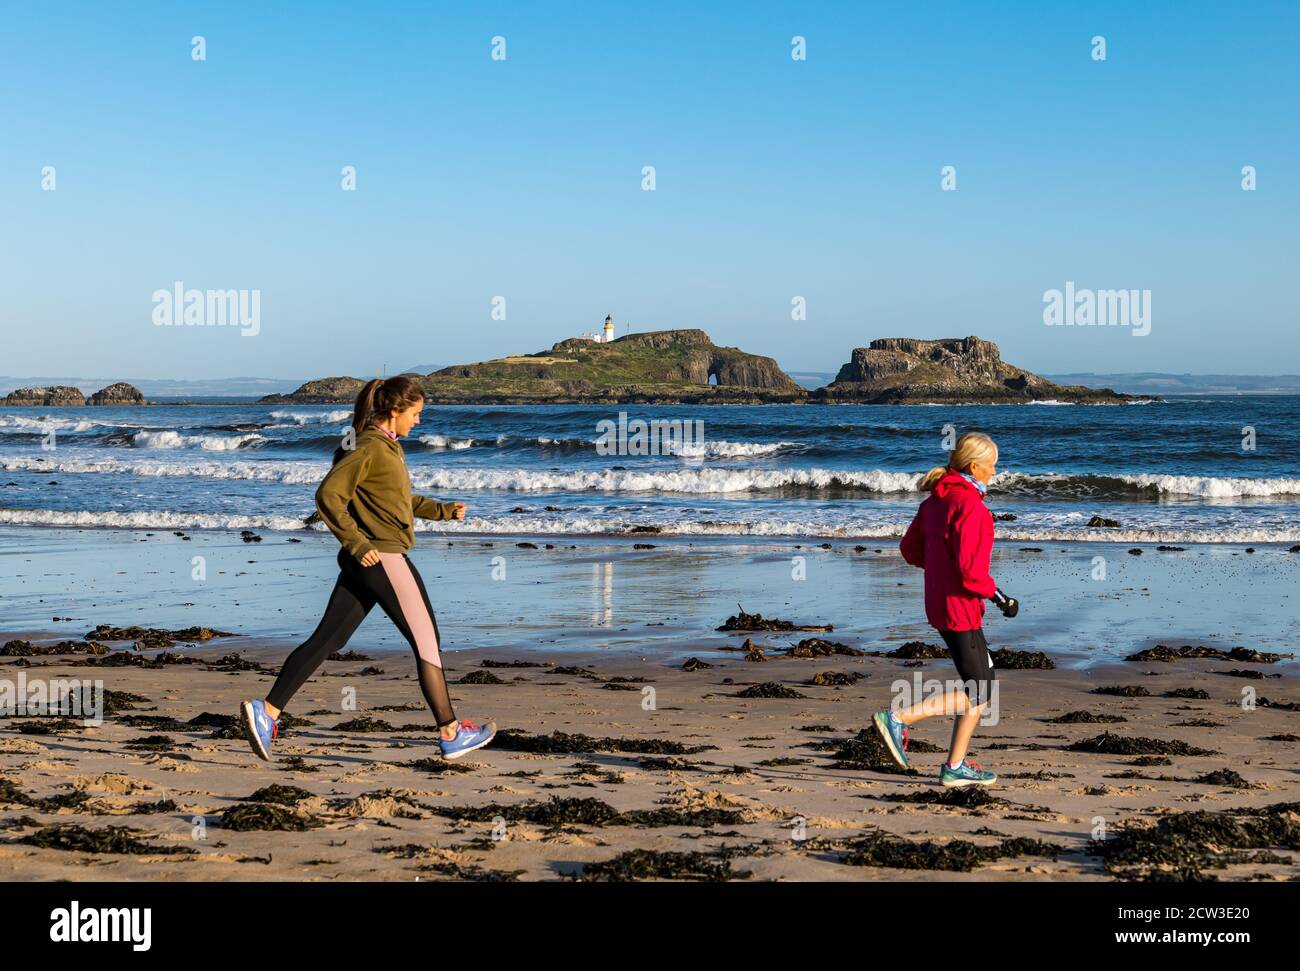 East Lothian, Écosse, Royaume-Uni, 27 septembre 2020. Scurry Running Event : les coureurs participent à un événement de course amusant de la plage de Yellowcraig à North Berwick et de retour sur une belle matinée ensoleillée d'automne. Fidra Island est à l'arrière-plan, tandis que les femmes coureuses courent sur la plage Banque D'Images